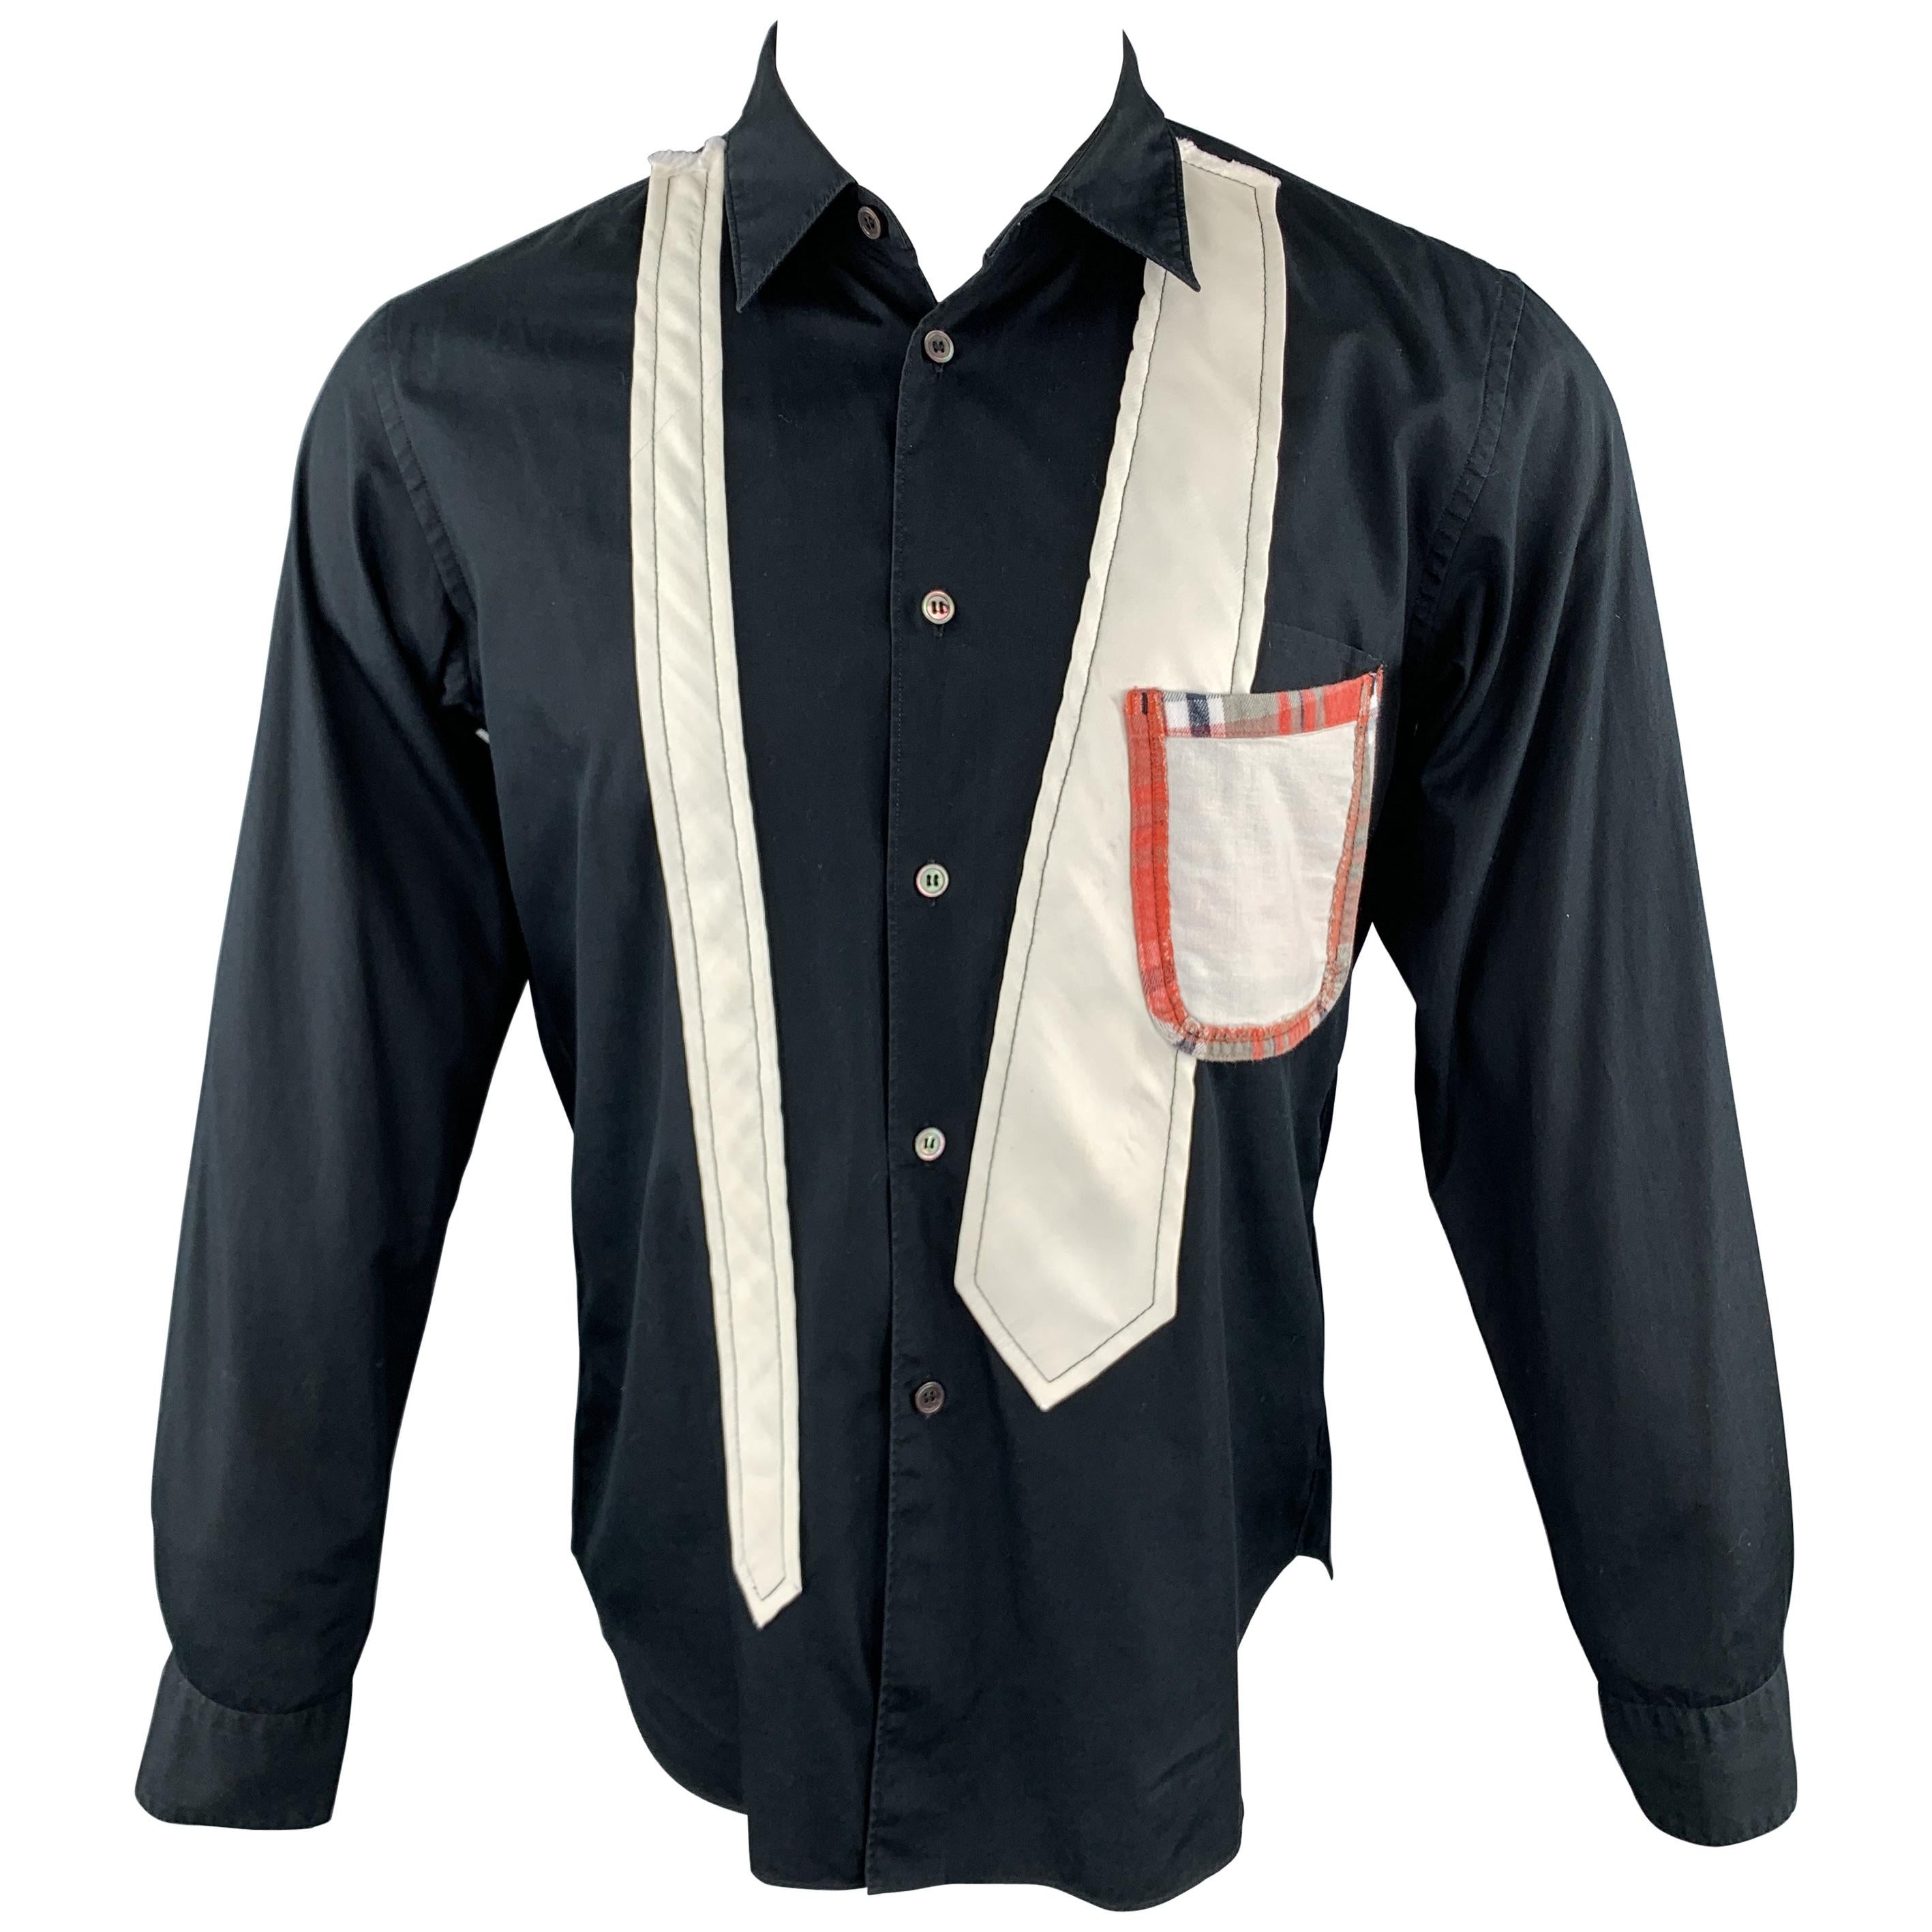 COMME des GARCONS HOMME PLUS Size S Black & White Patchwork Long Sleeve Shirt